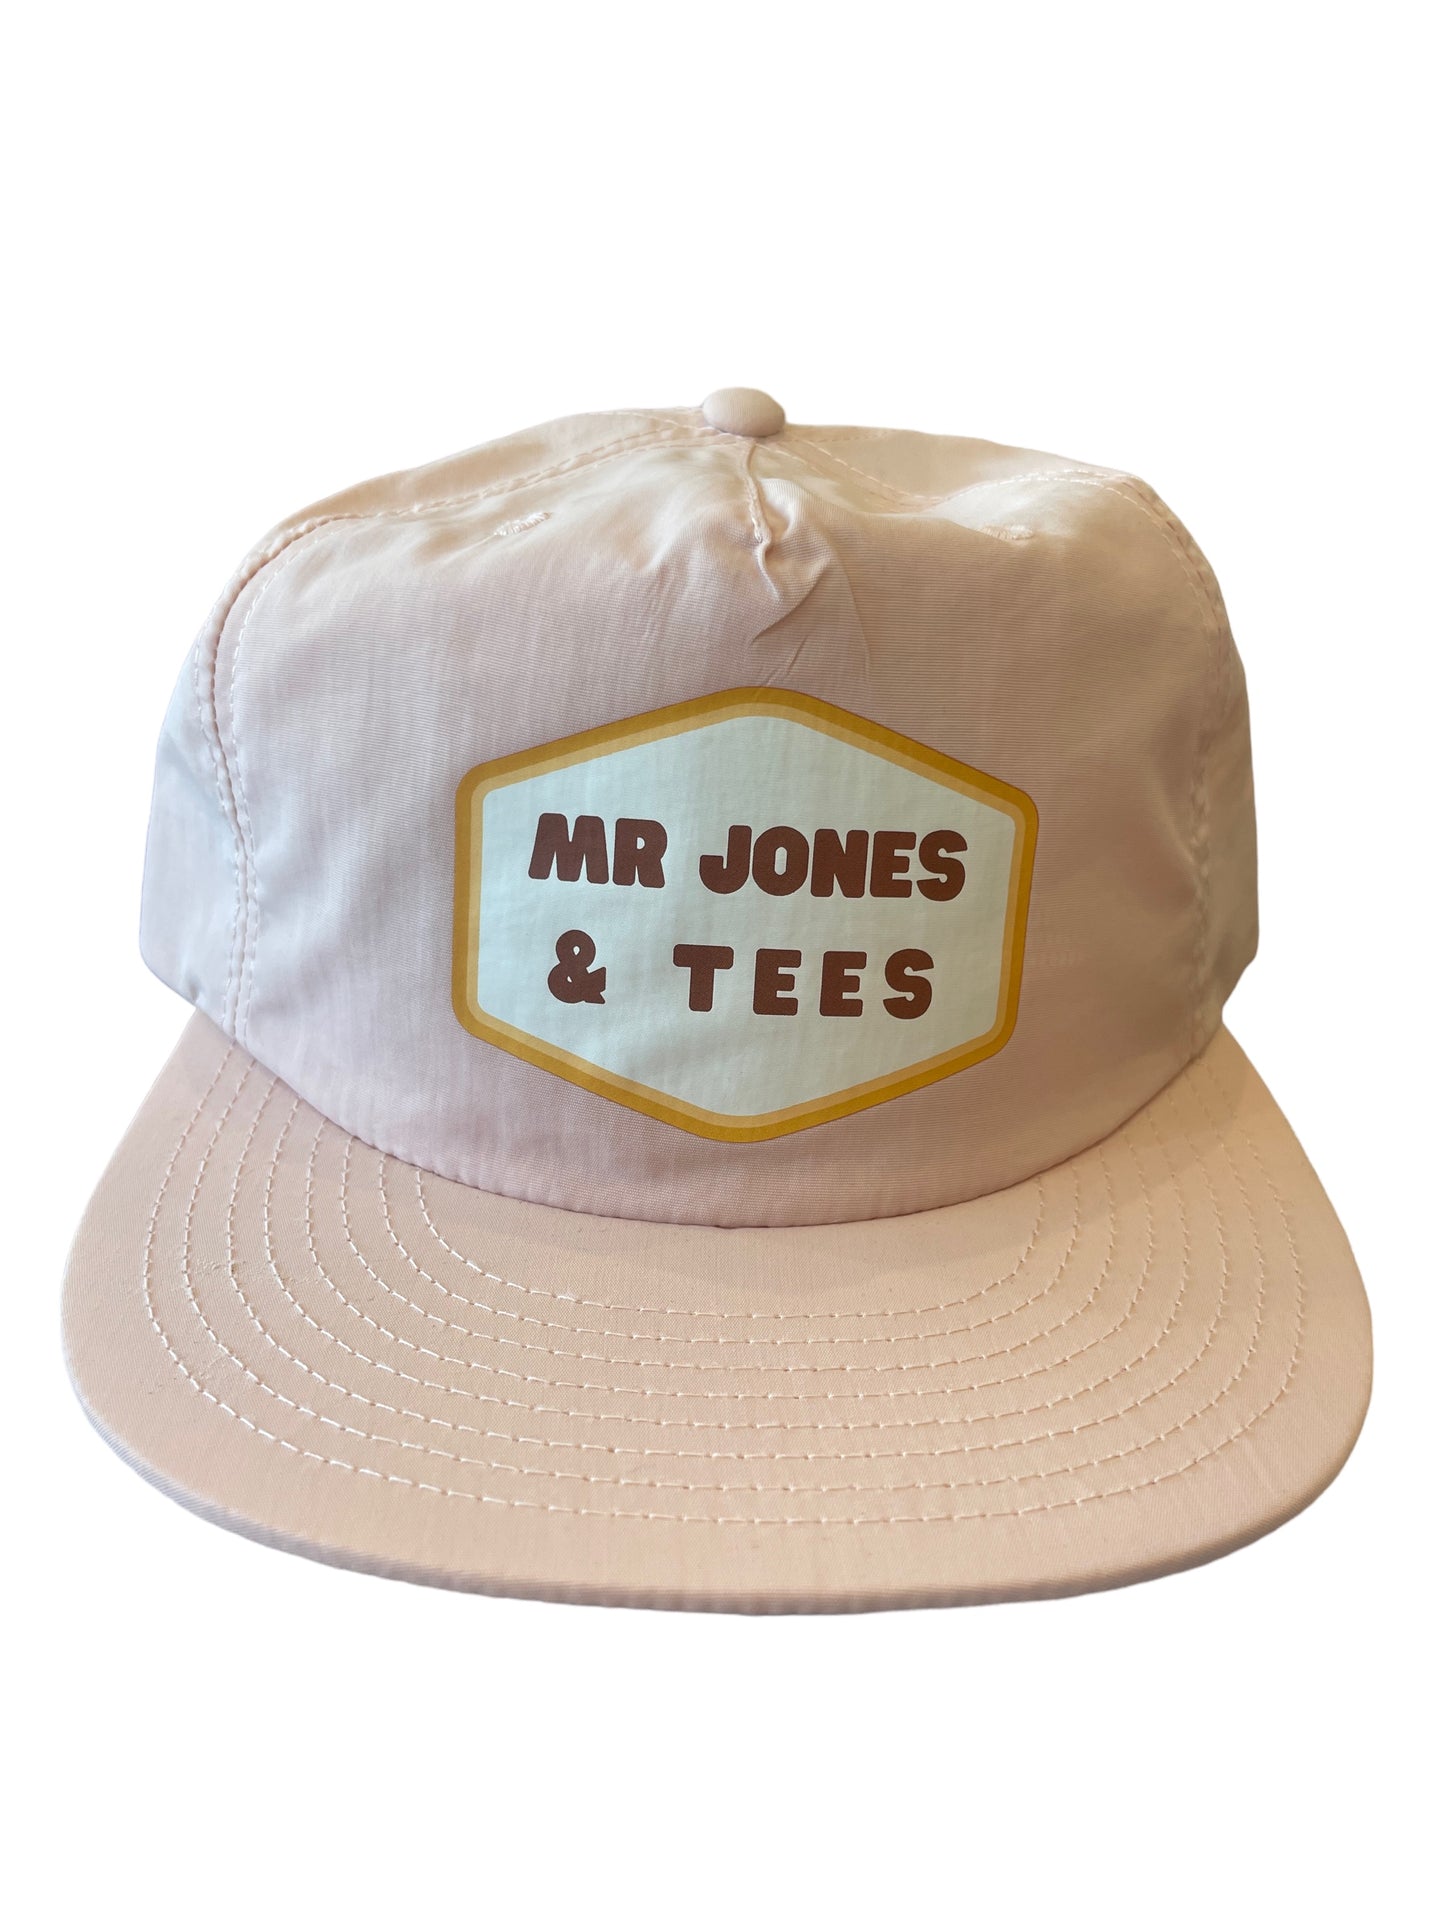 Mr Jones & Tees Trucker cap